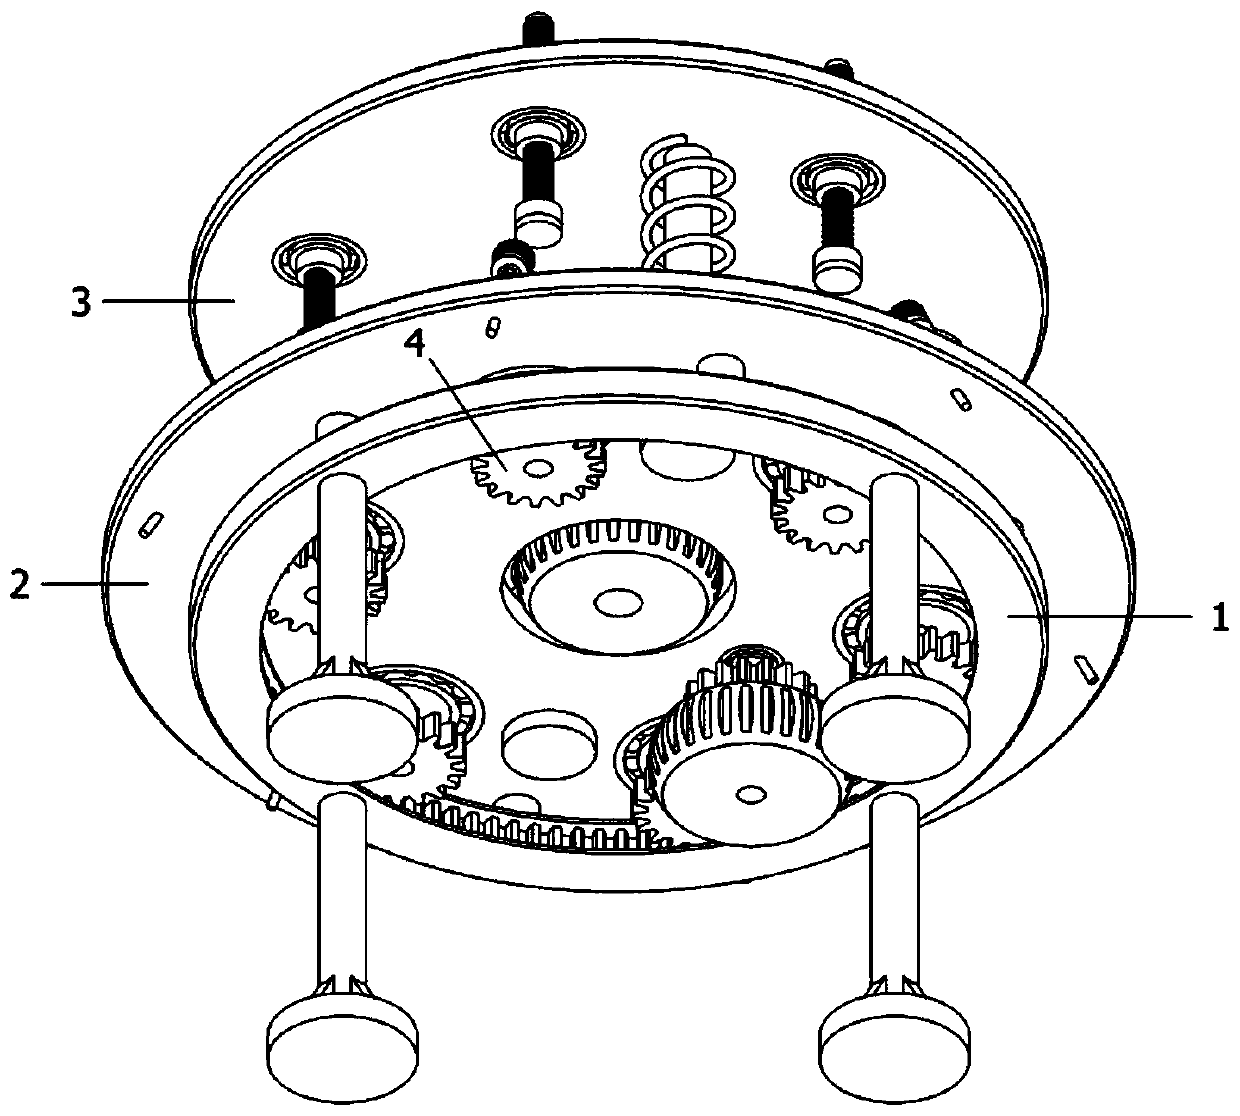 Bowl opening polishing mechanism based on ceramic production